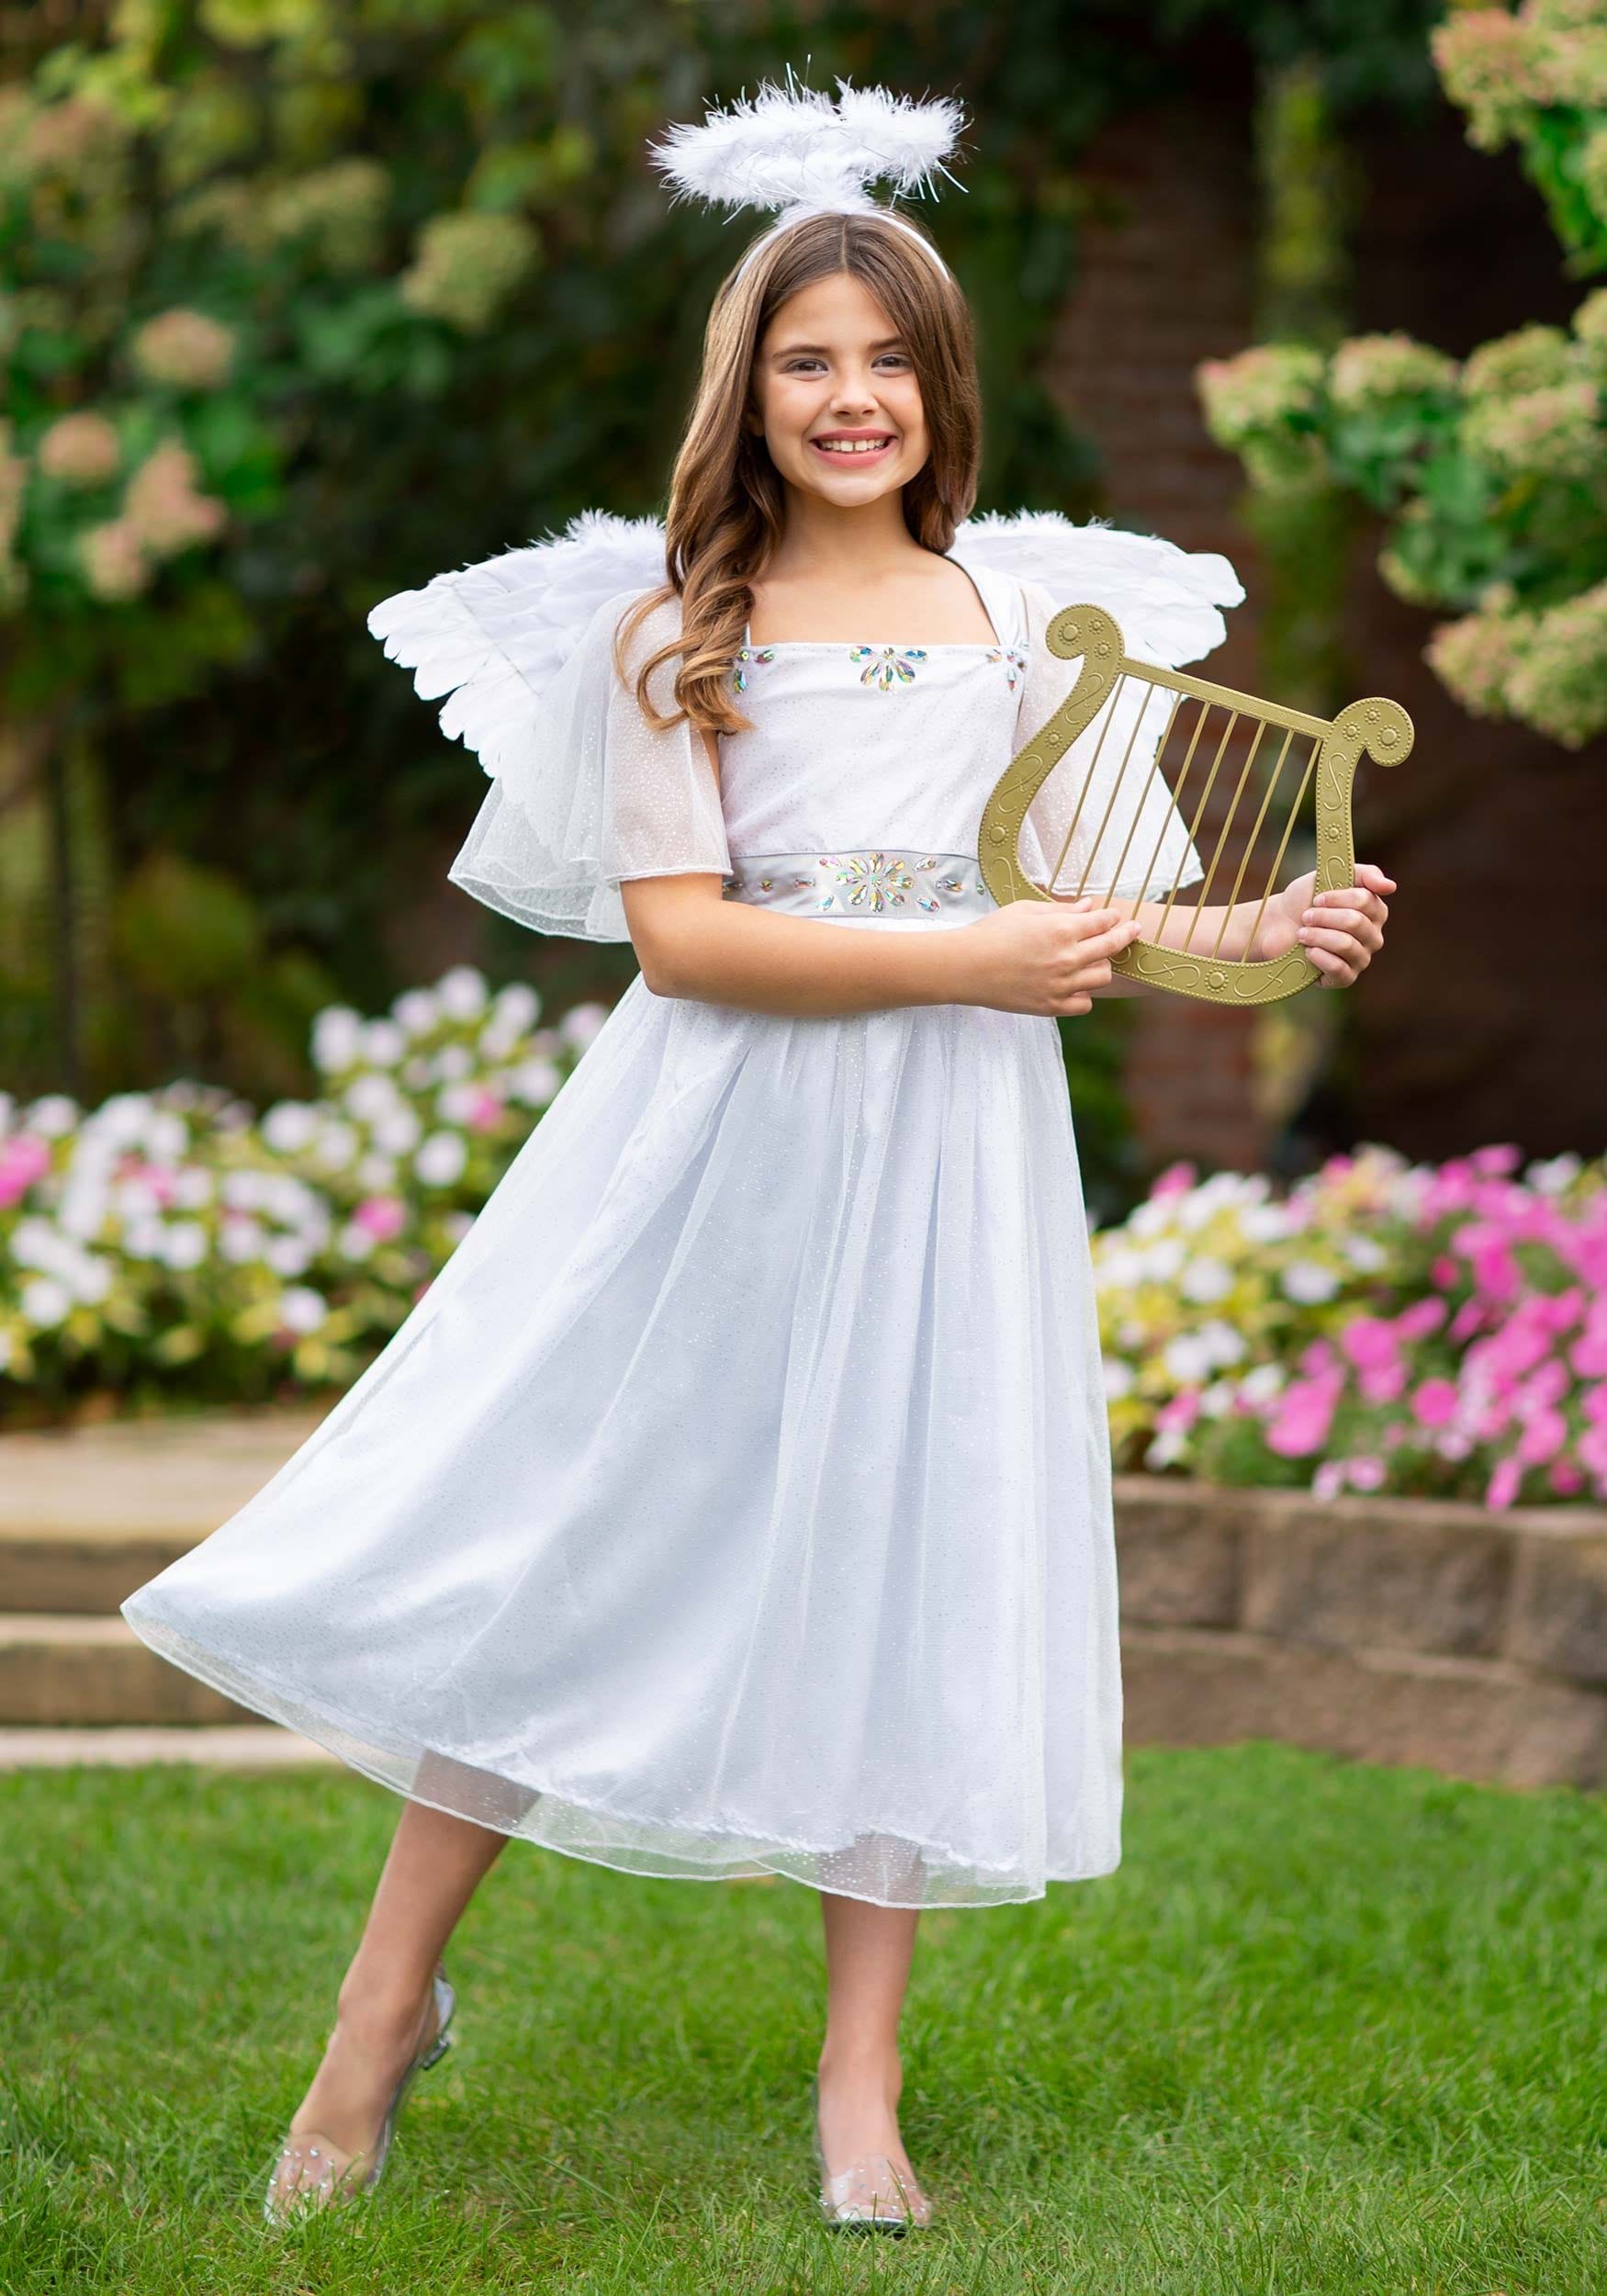 Shimmering Angel Costume for Girls